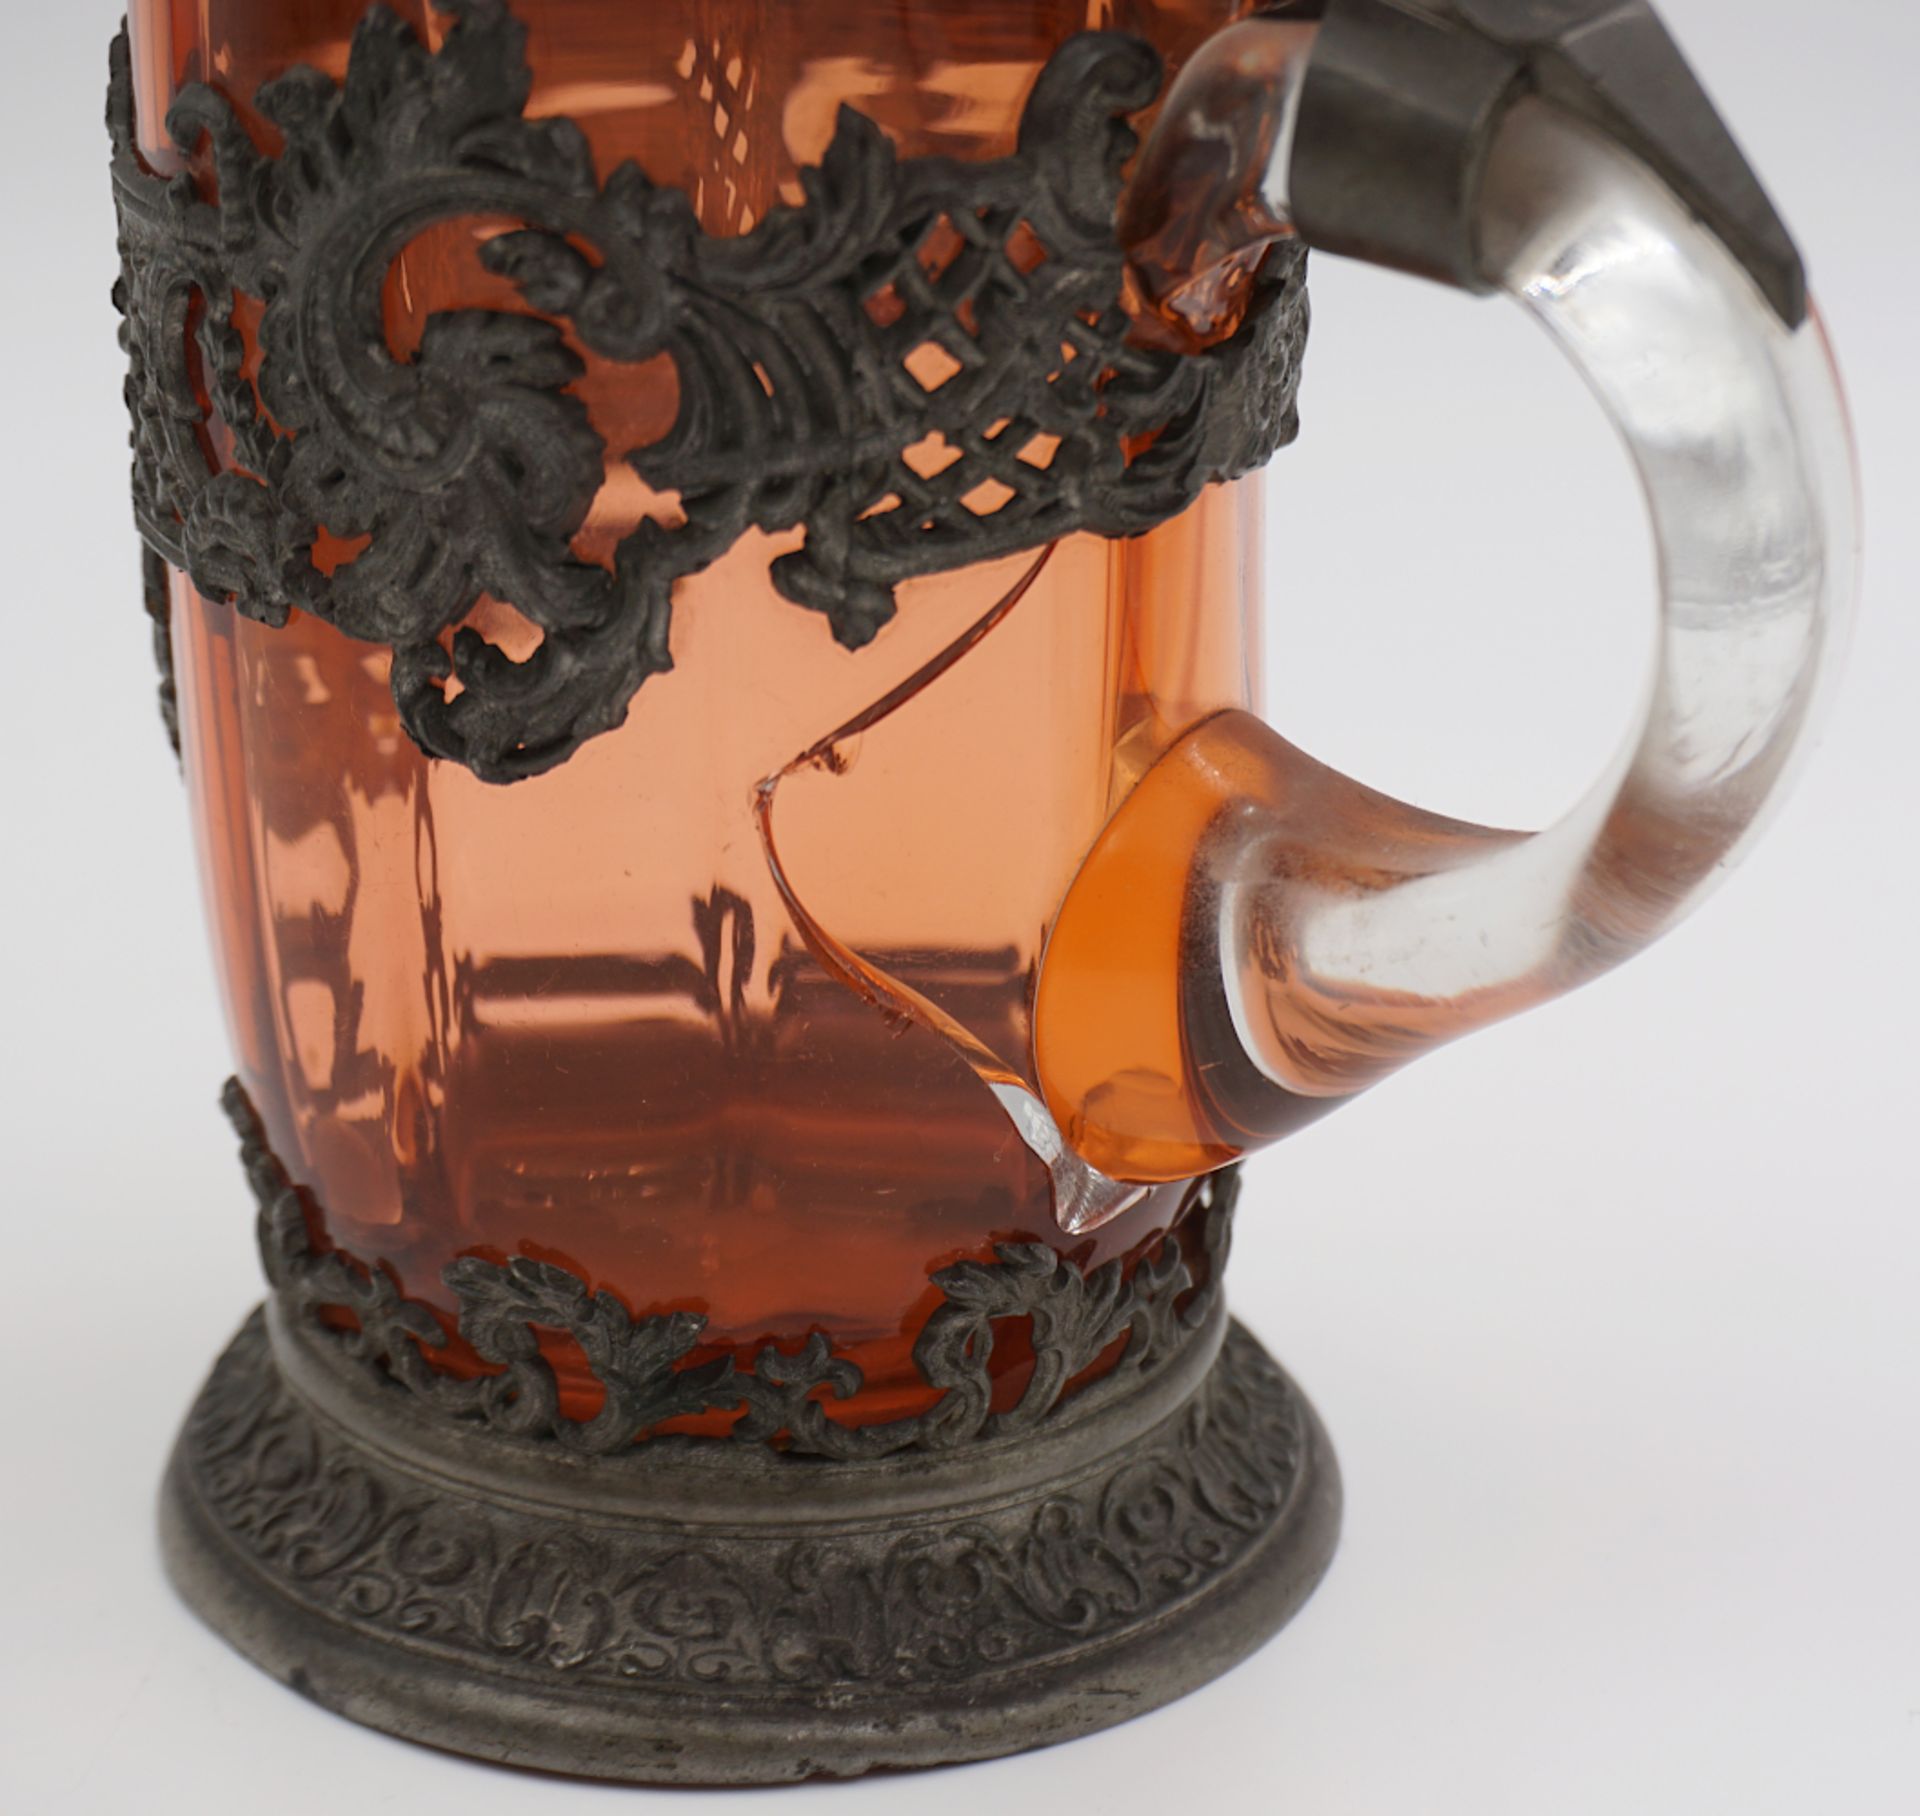 1 Bierkrug wohl um 1900 braunes Glas mit Zinnmontierung/-standfuß im Rokokostil - Bild 6 aus 6